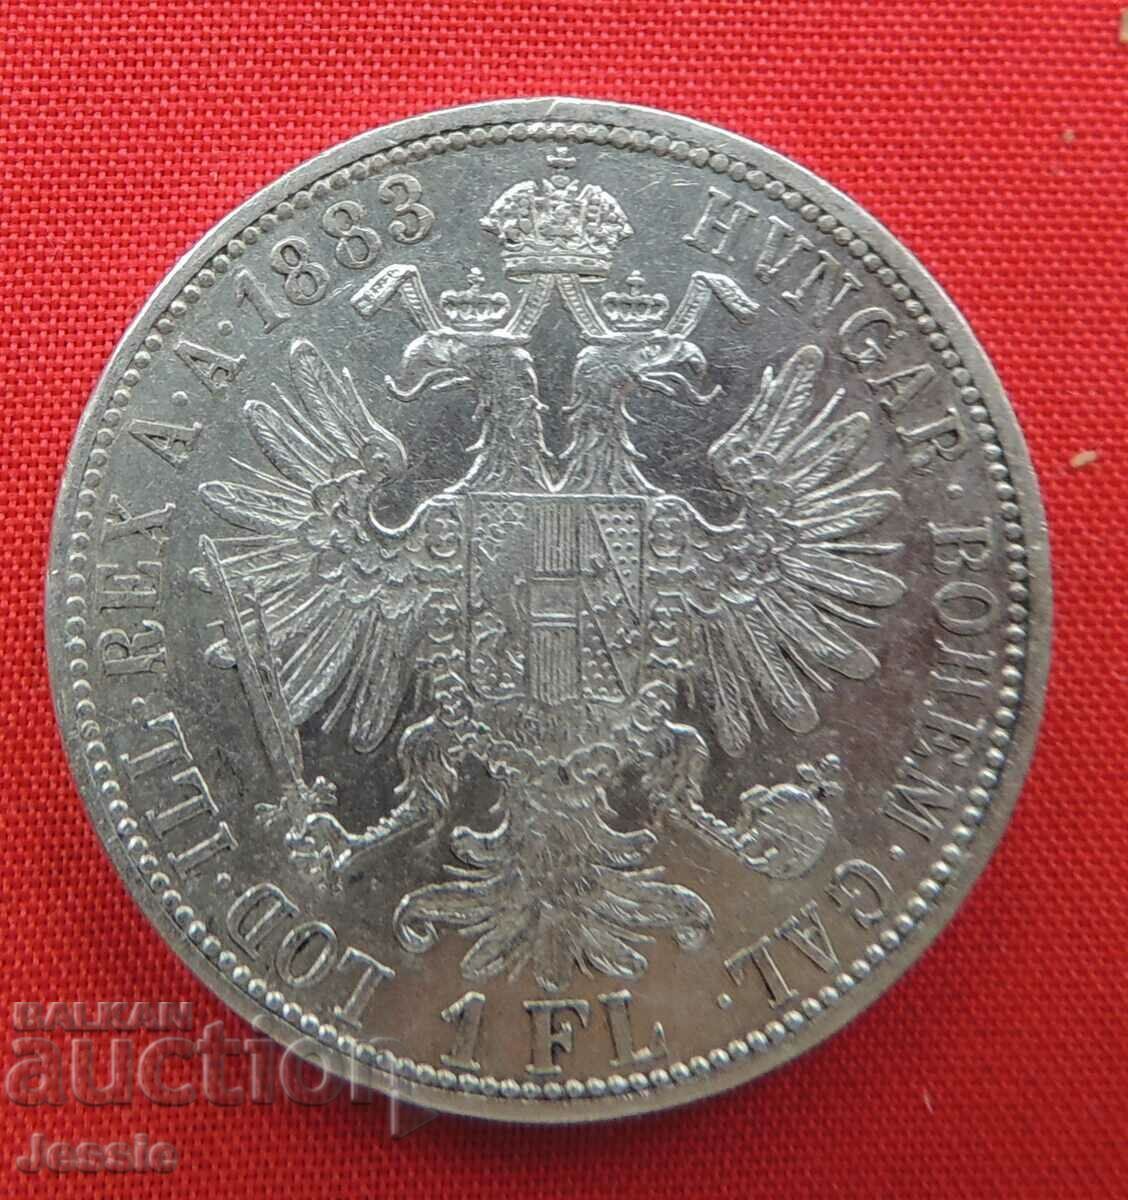 1 florin 1883 Αυστροουγγαρία ασήμι